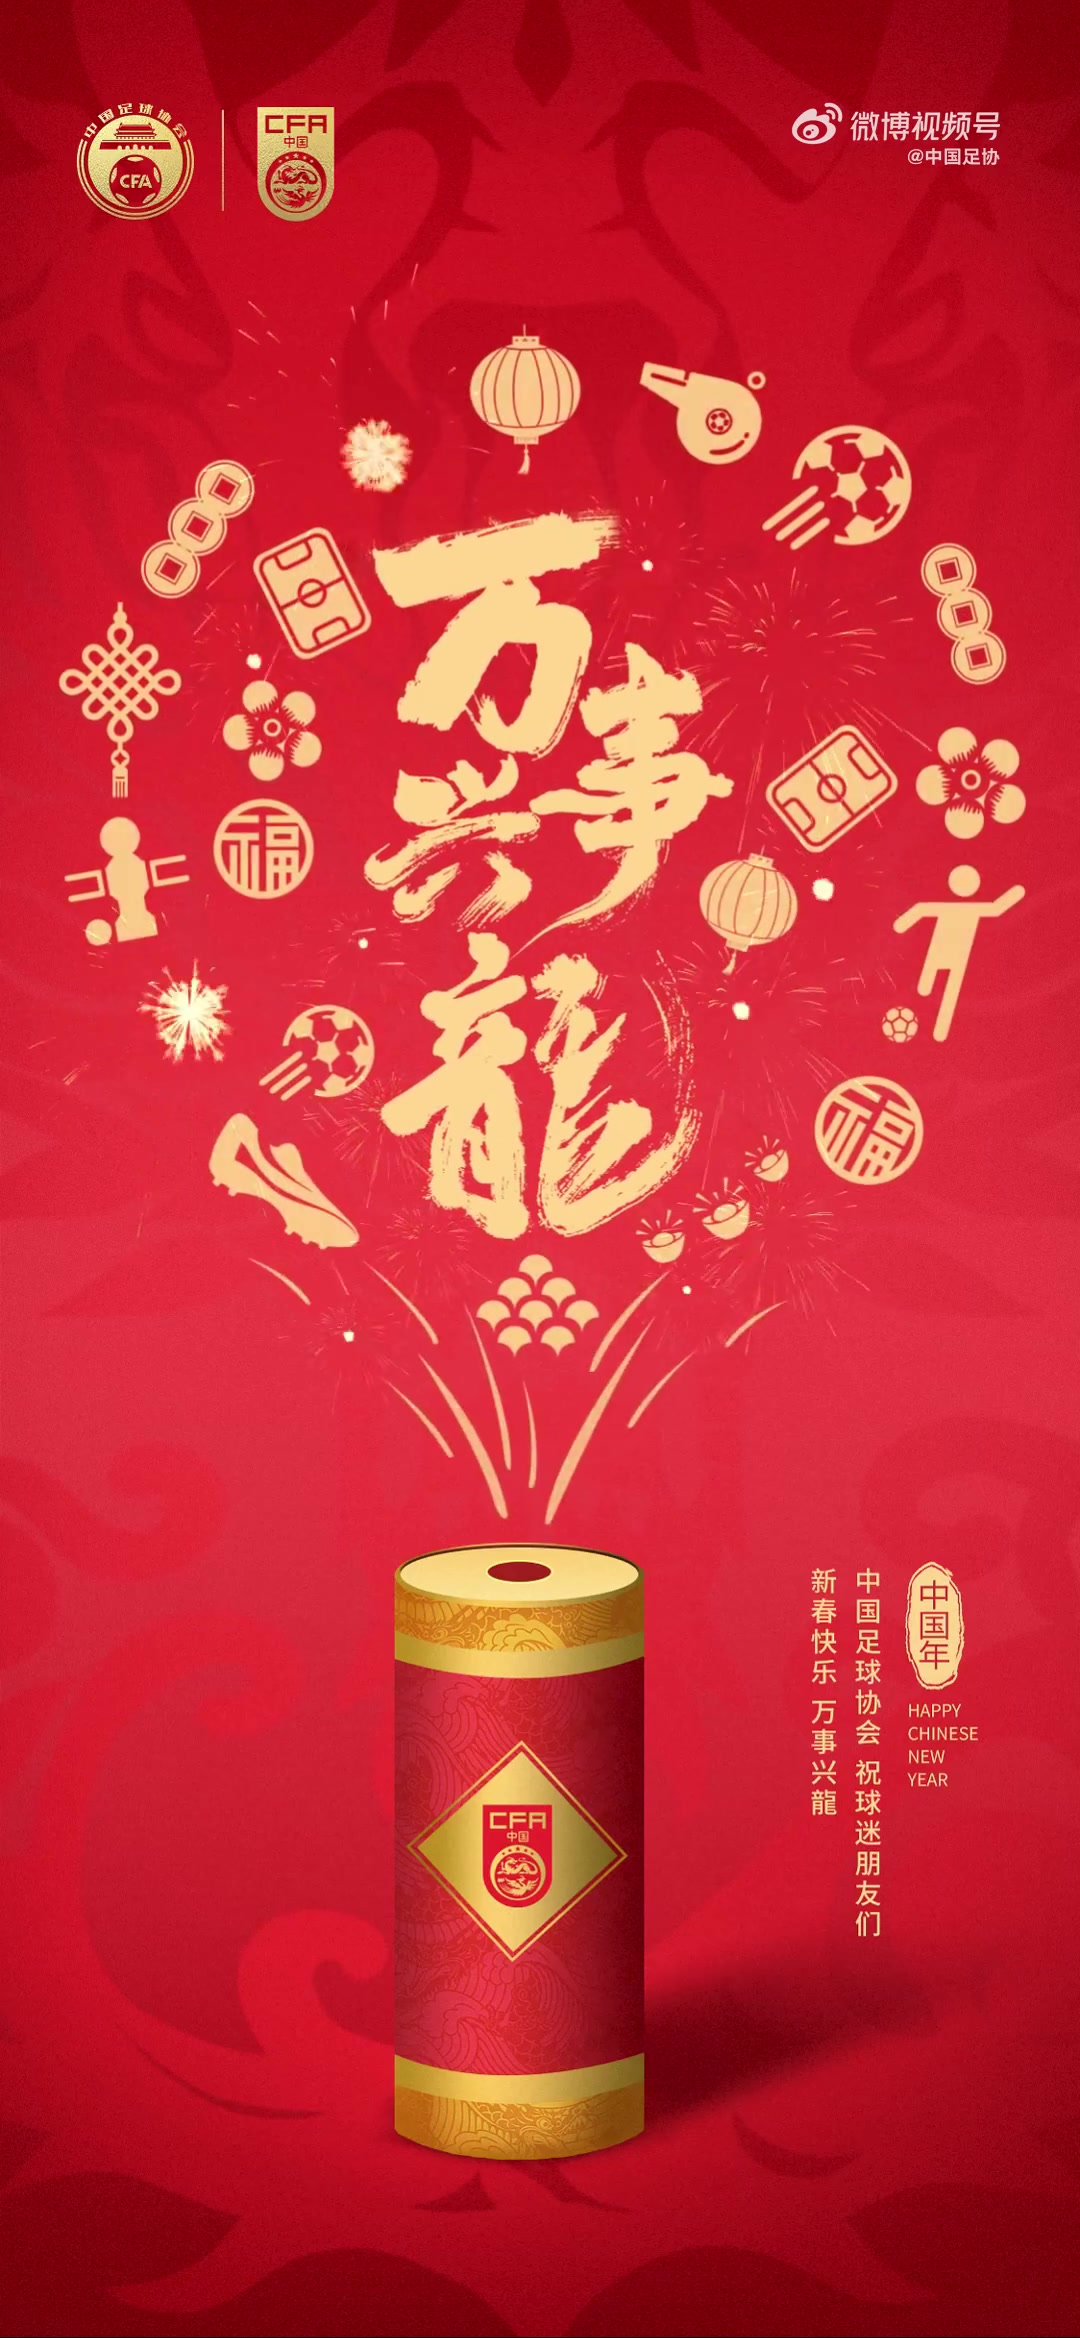 值此新春佳节之际，中国足球协会祝广大球迷朋友们龙年大吉